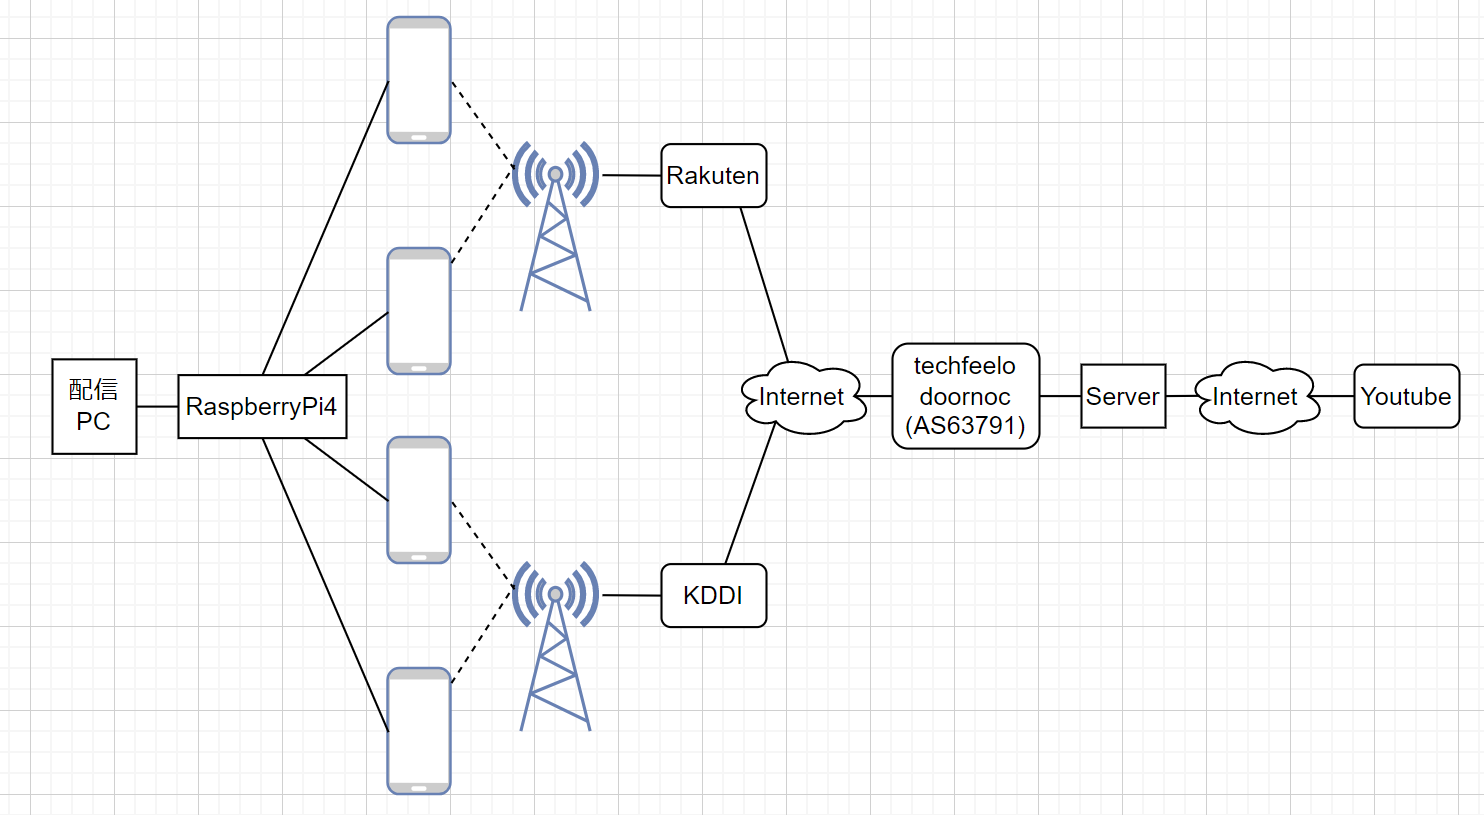 図1.1 配信ネットワーク構成図